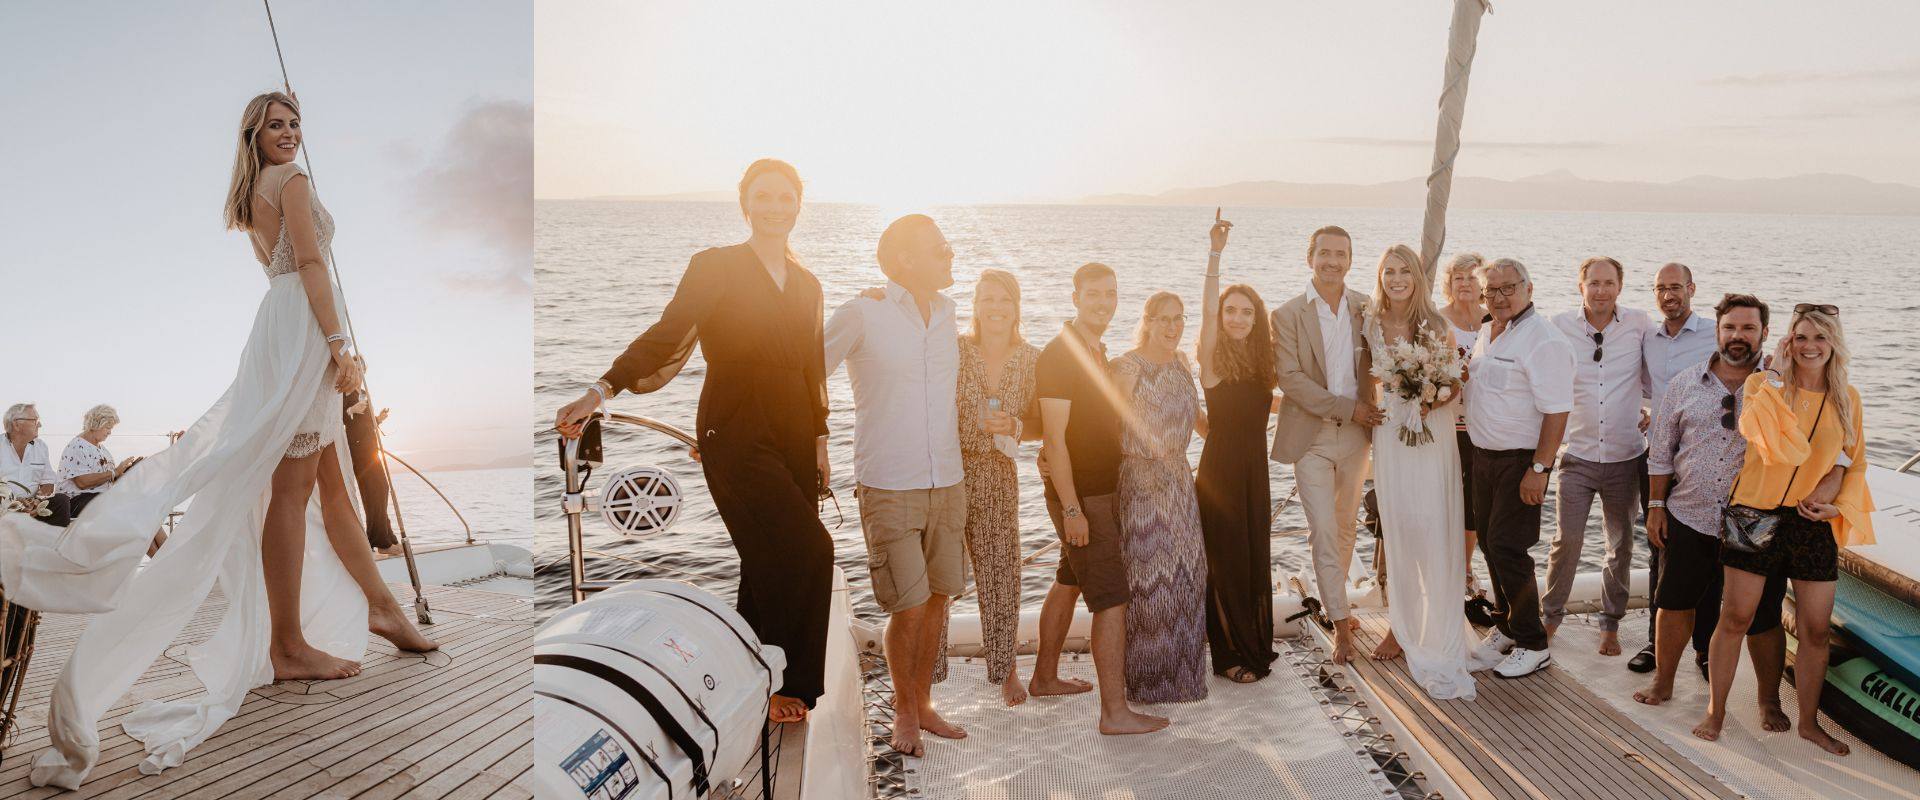 boat wedding in mallorca - palma catamaran cruise sunet wedding photo